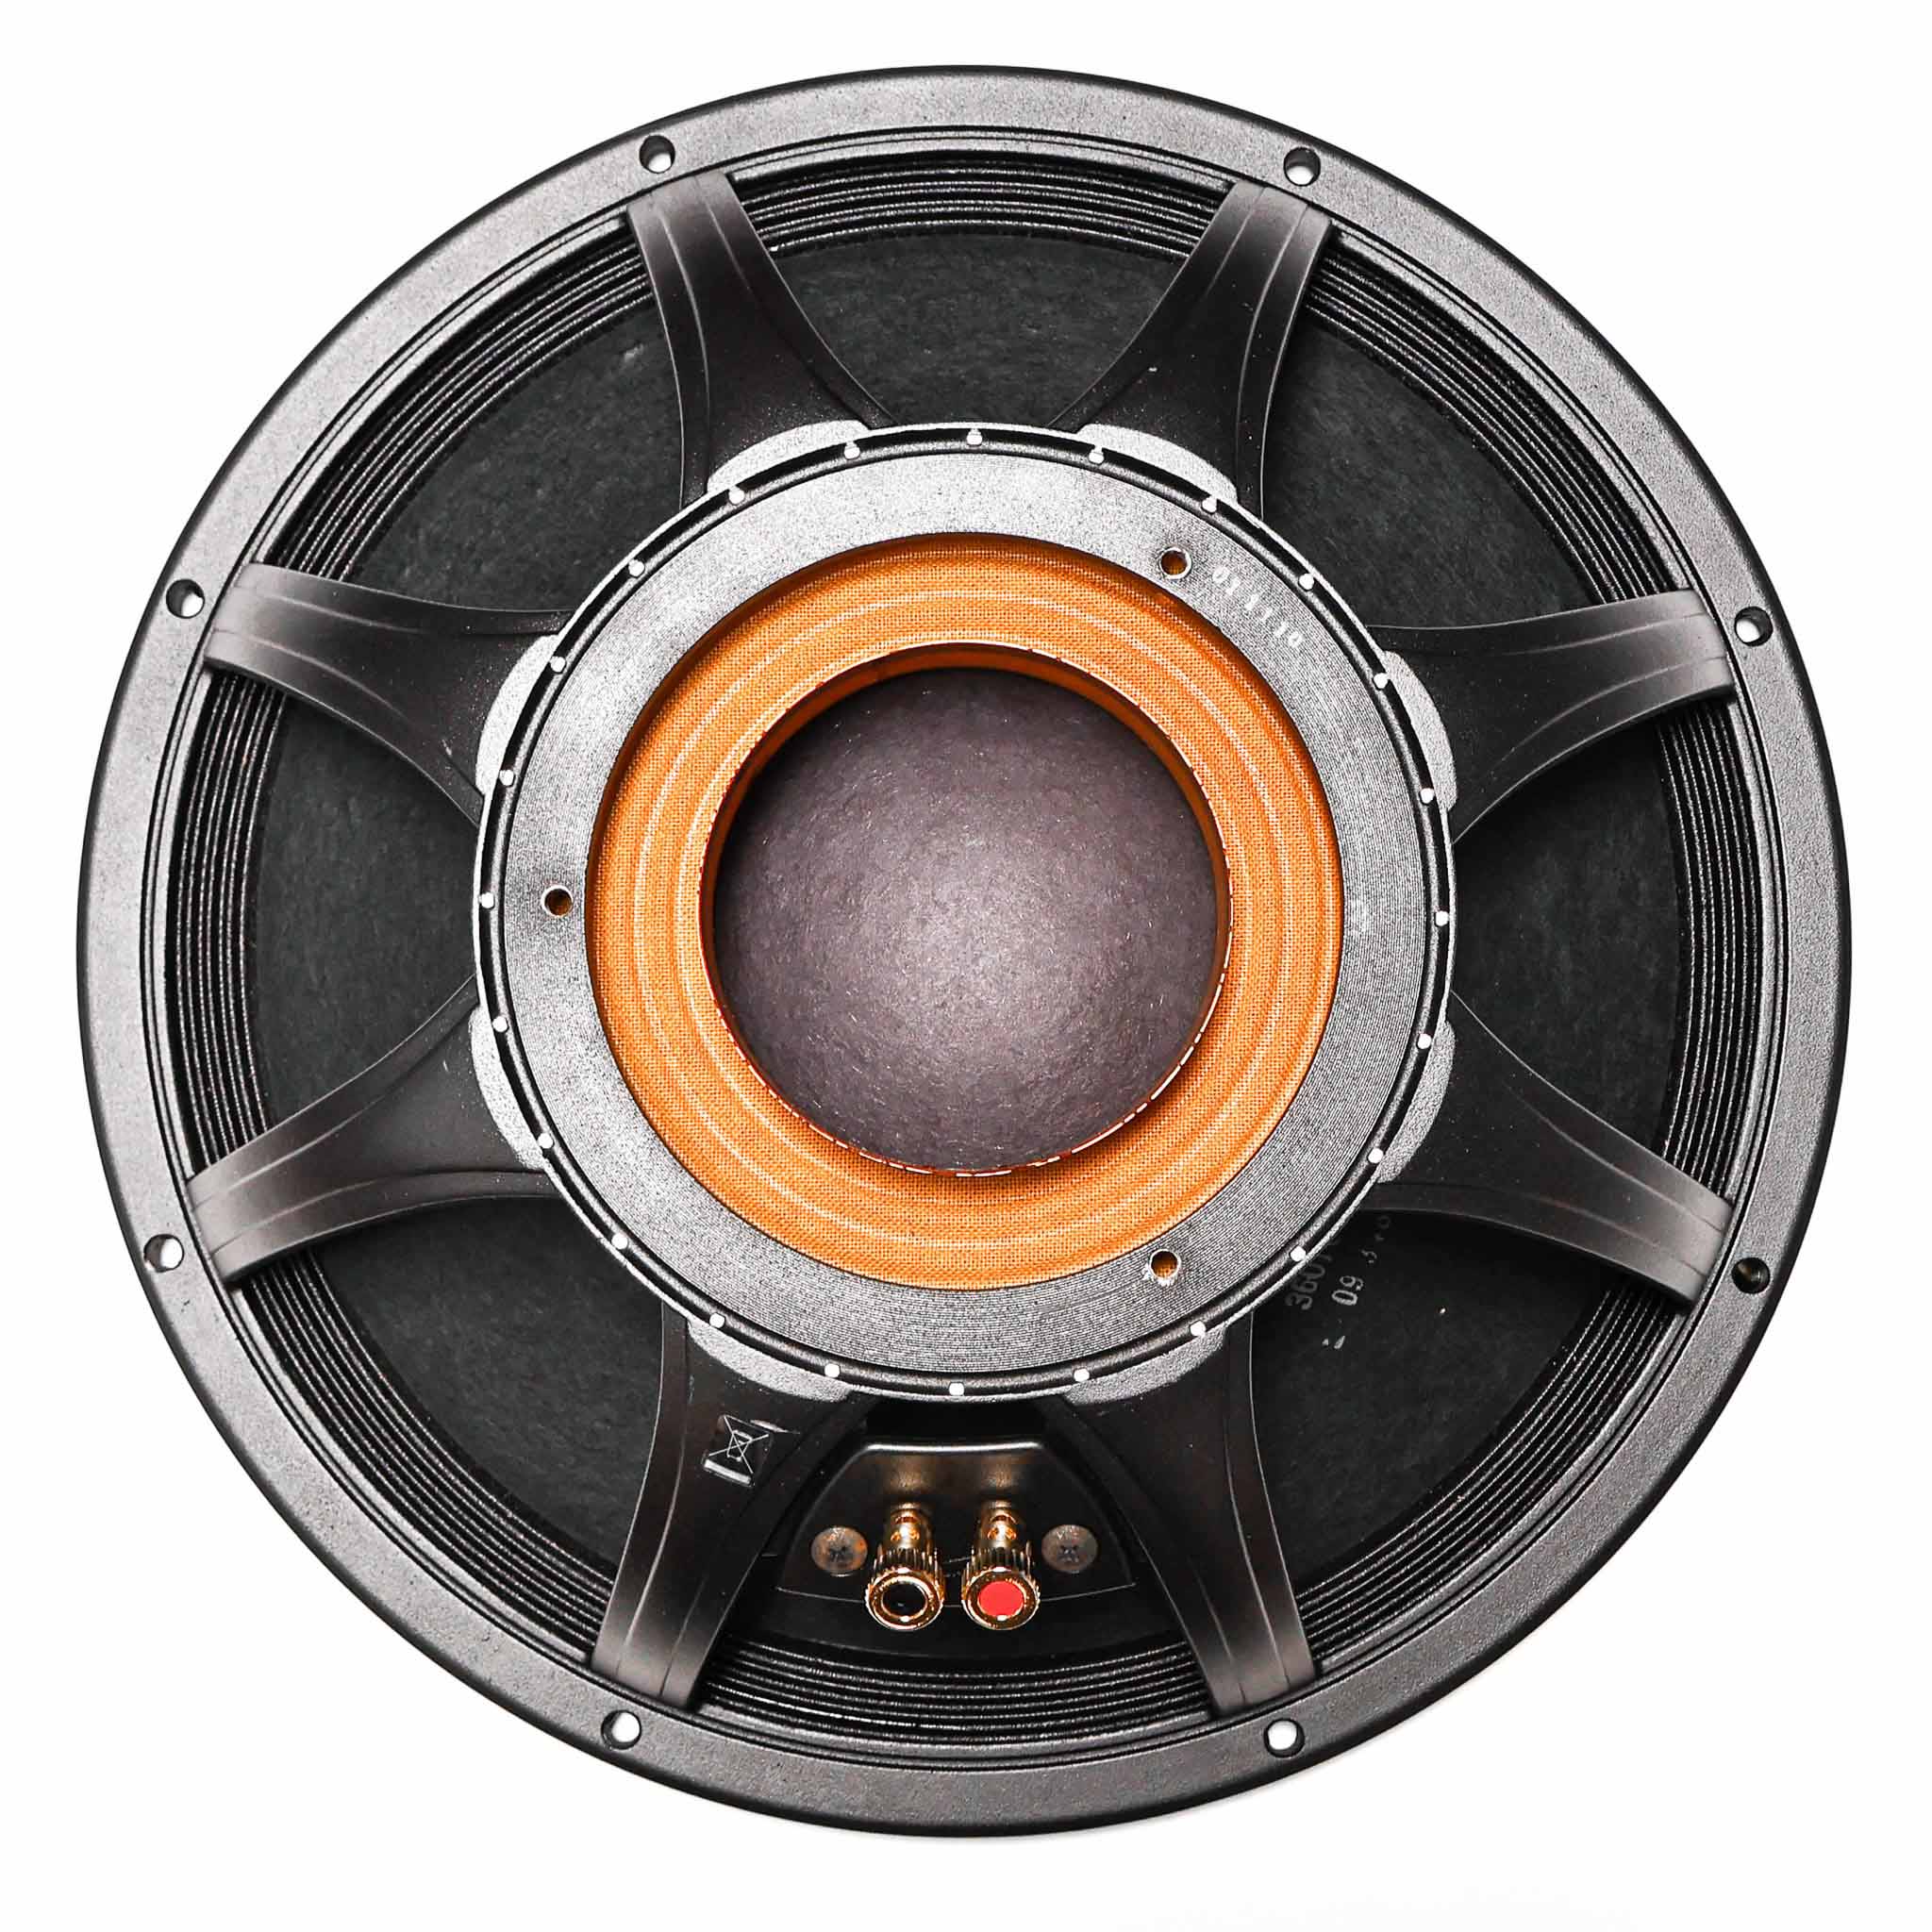 Black Widow 1508-8 SPS BWX RB 15" Speaker